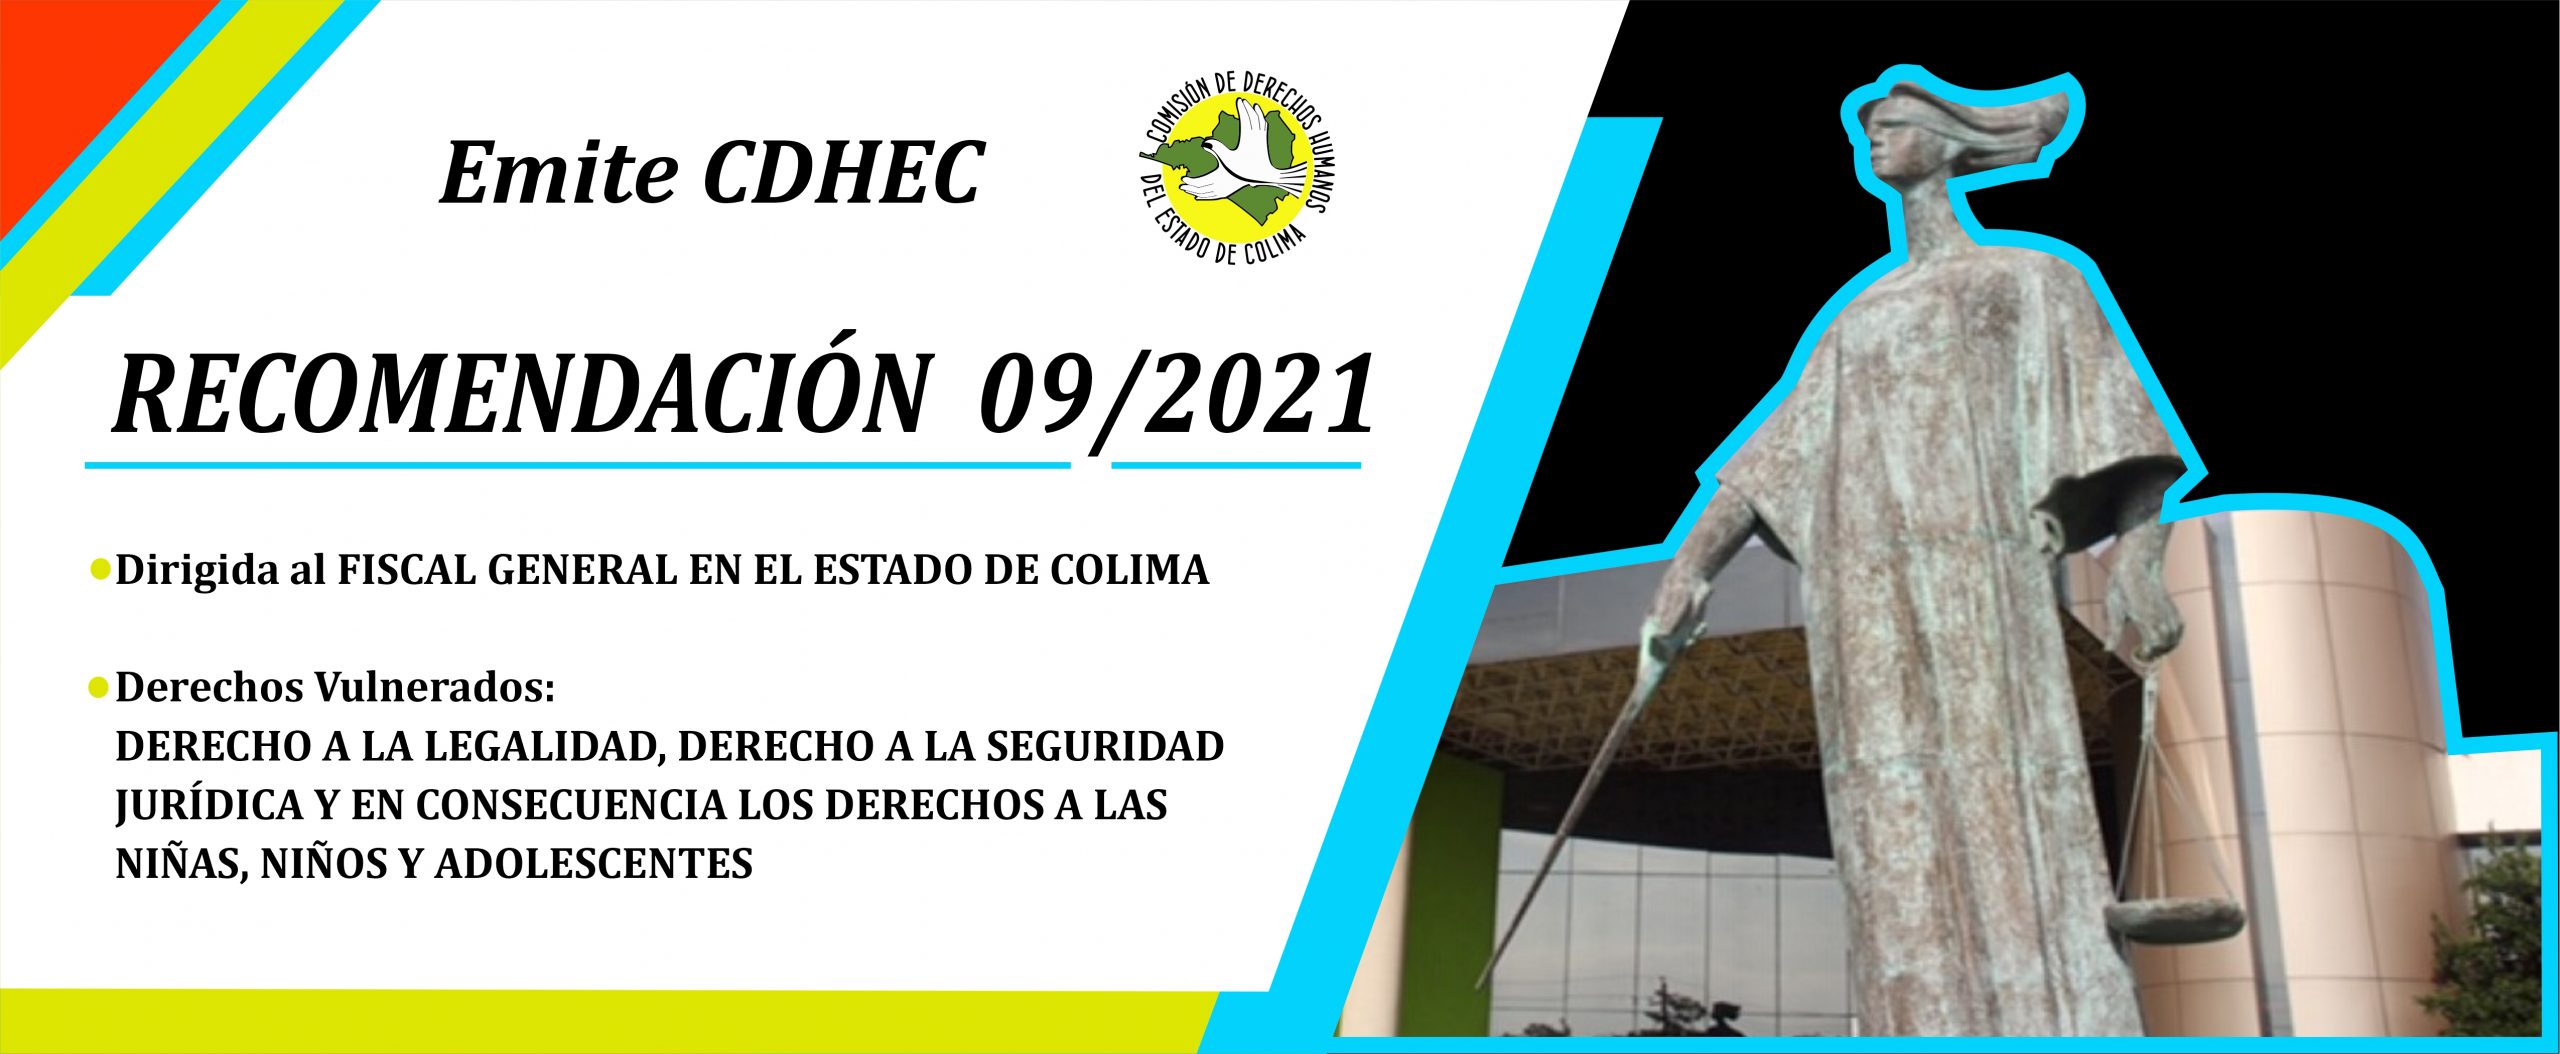 CDHEC emite Recomendación al Fiscal General en el Estado de Colima